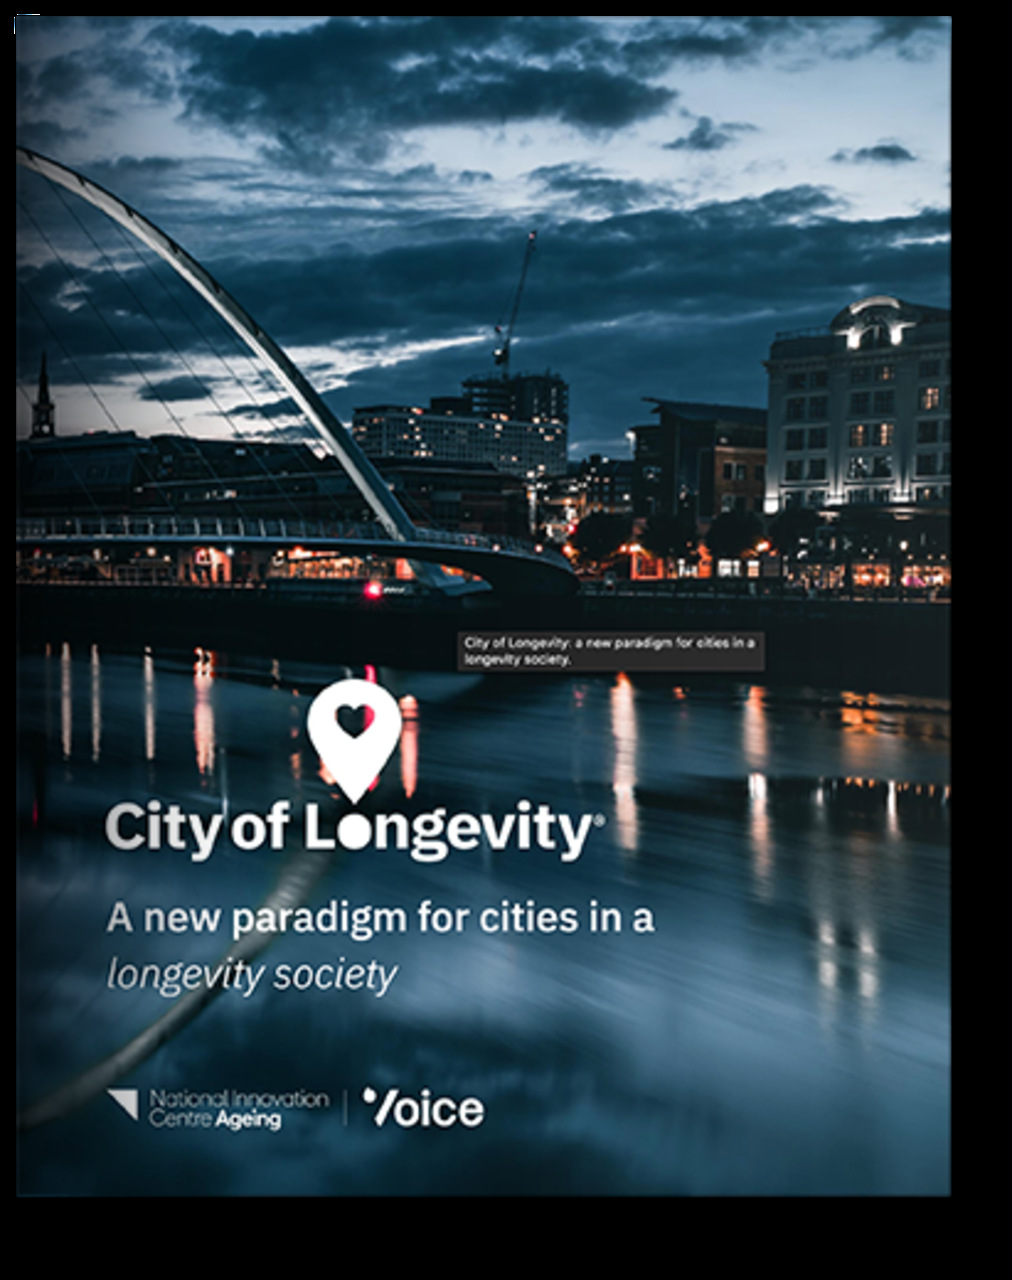 Grad dugovječnosti: prezentacijska brošura projekta